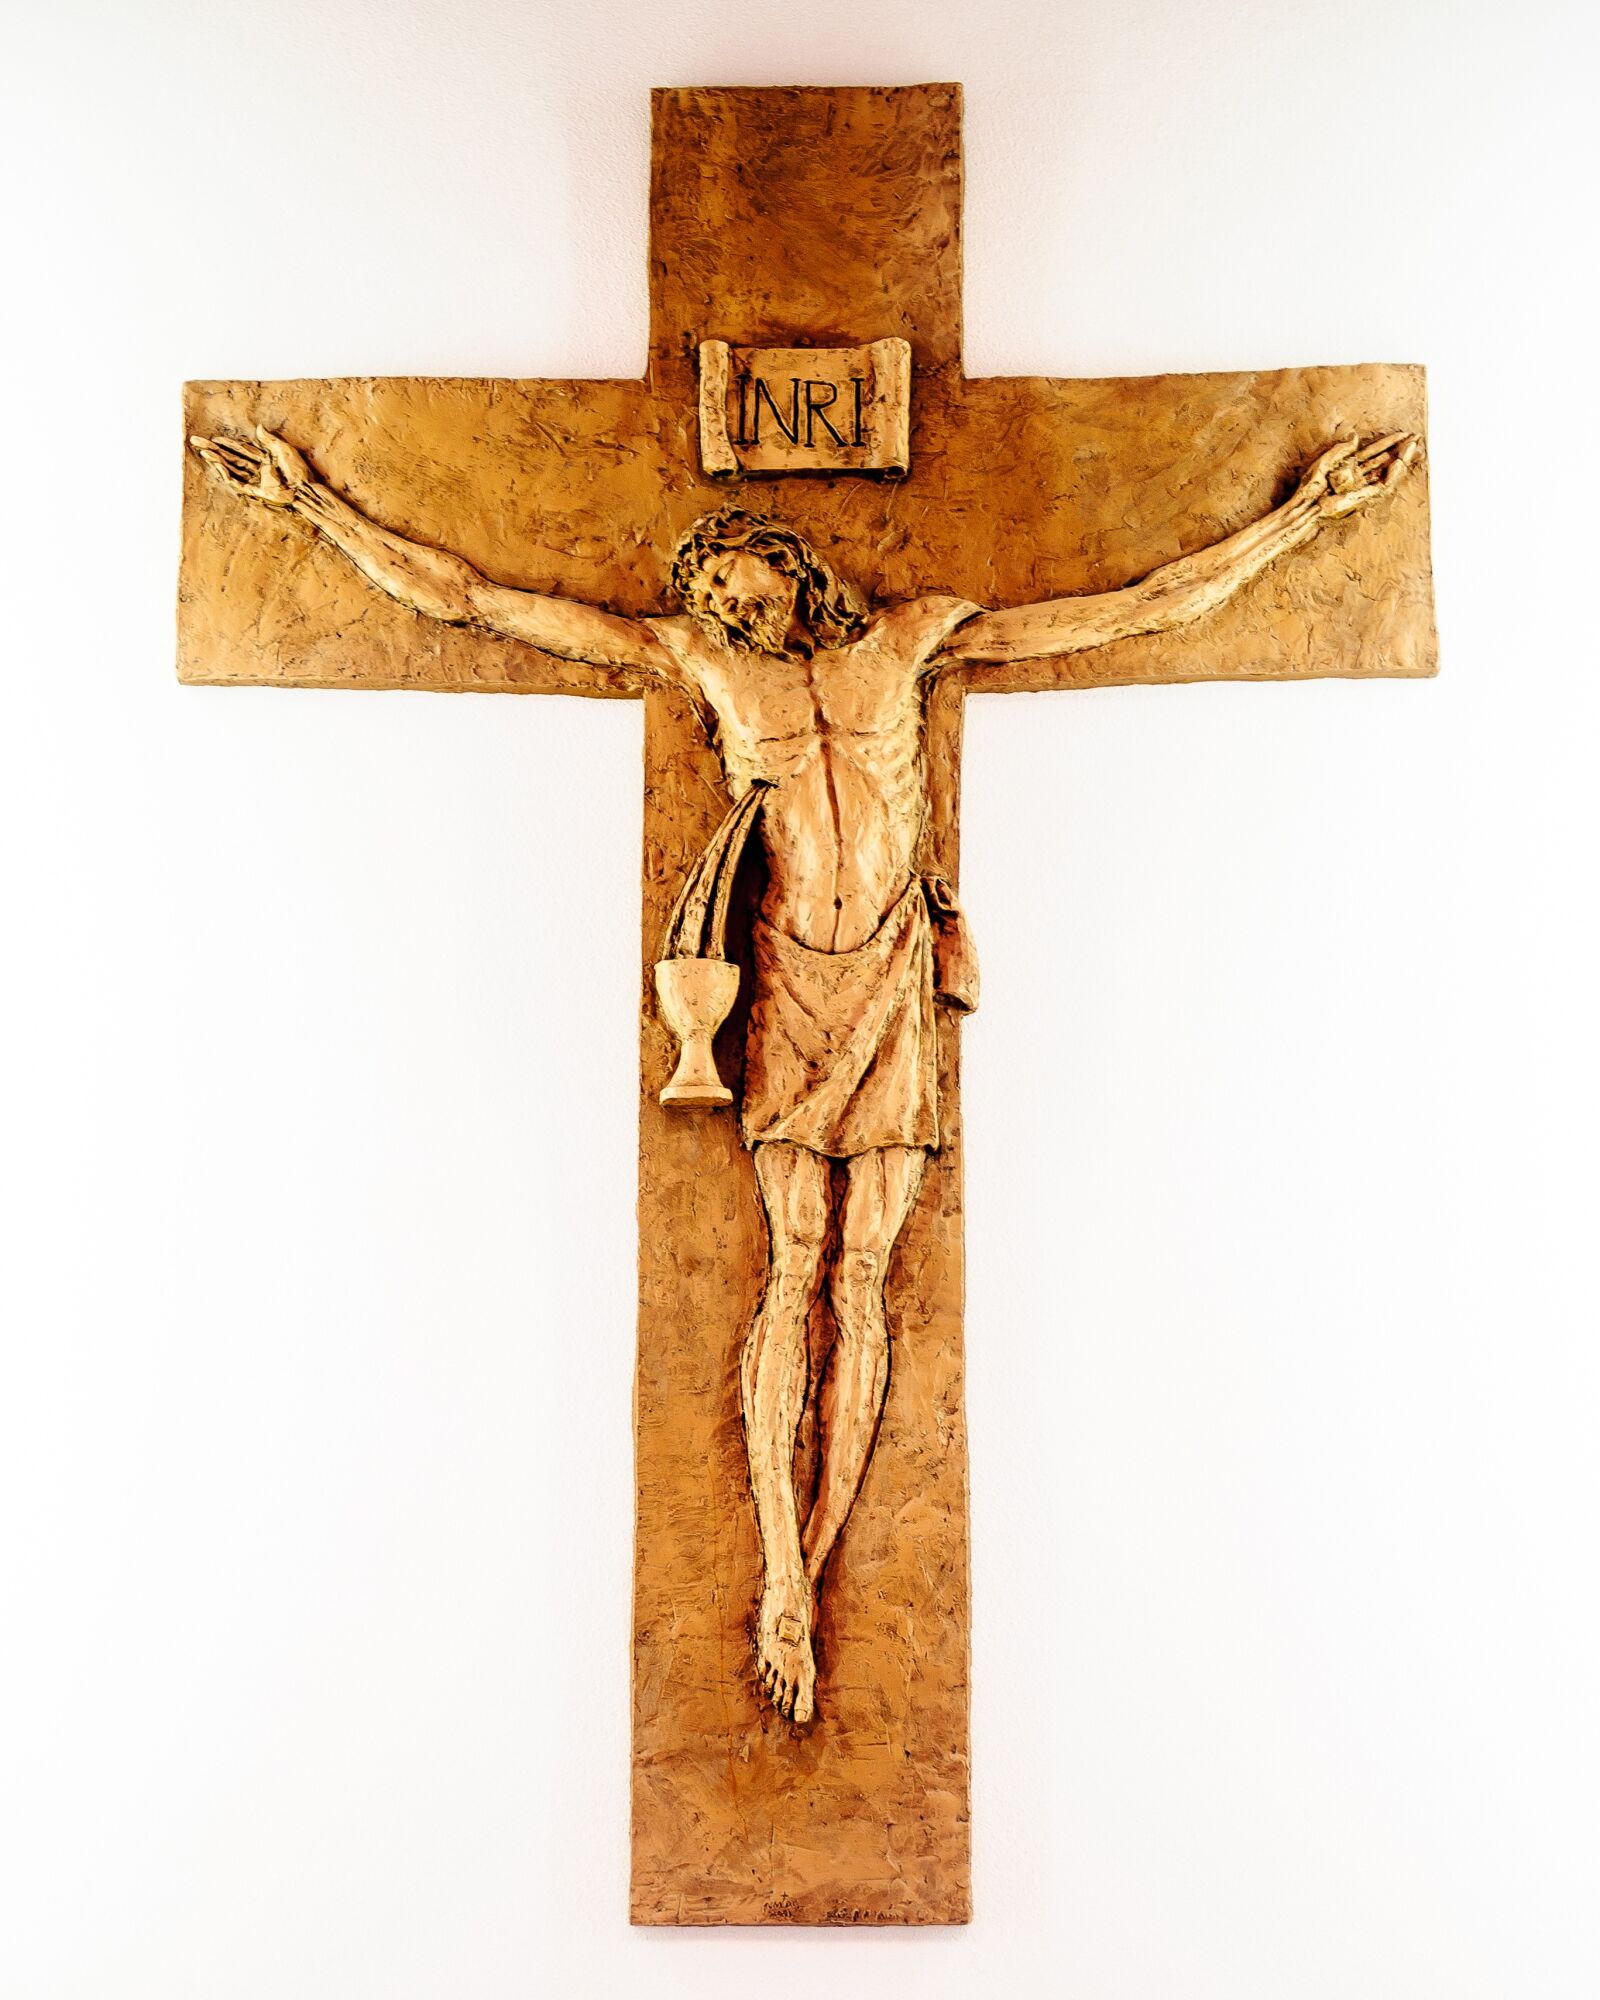 Nikon D700 sample photo. Catholic, catholicism, crucifix photography